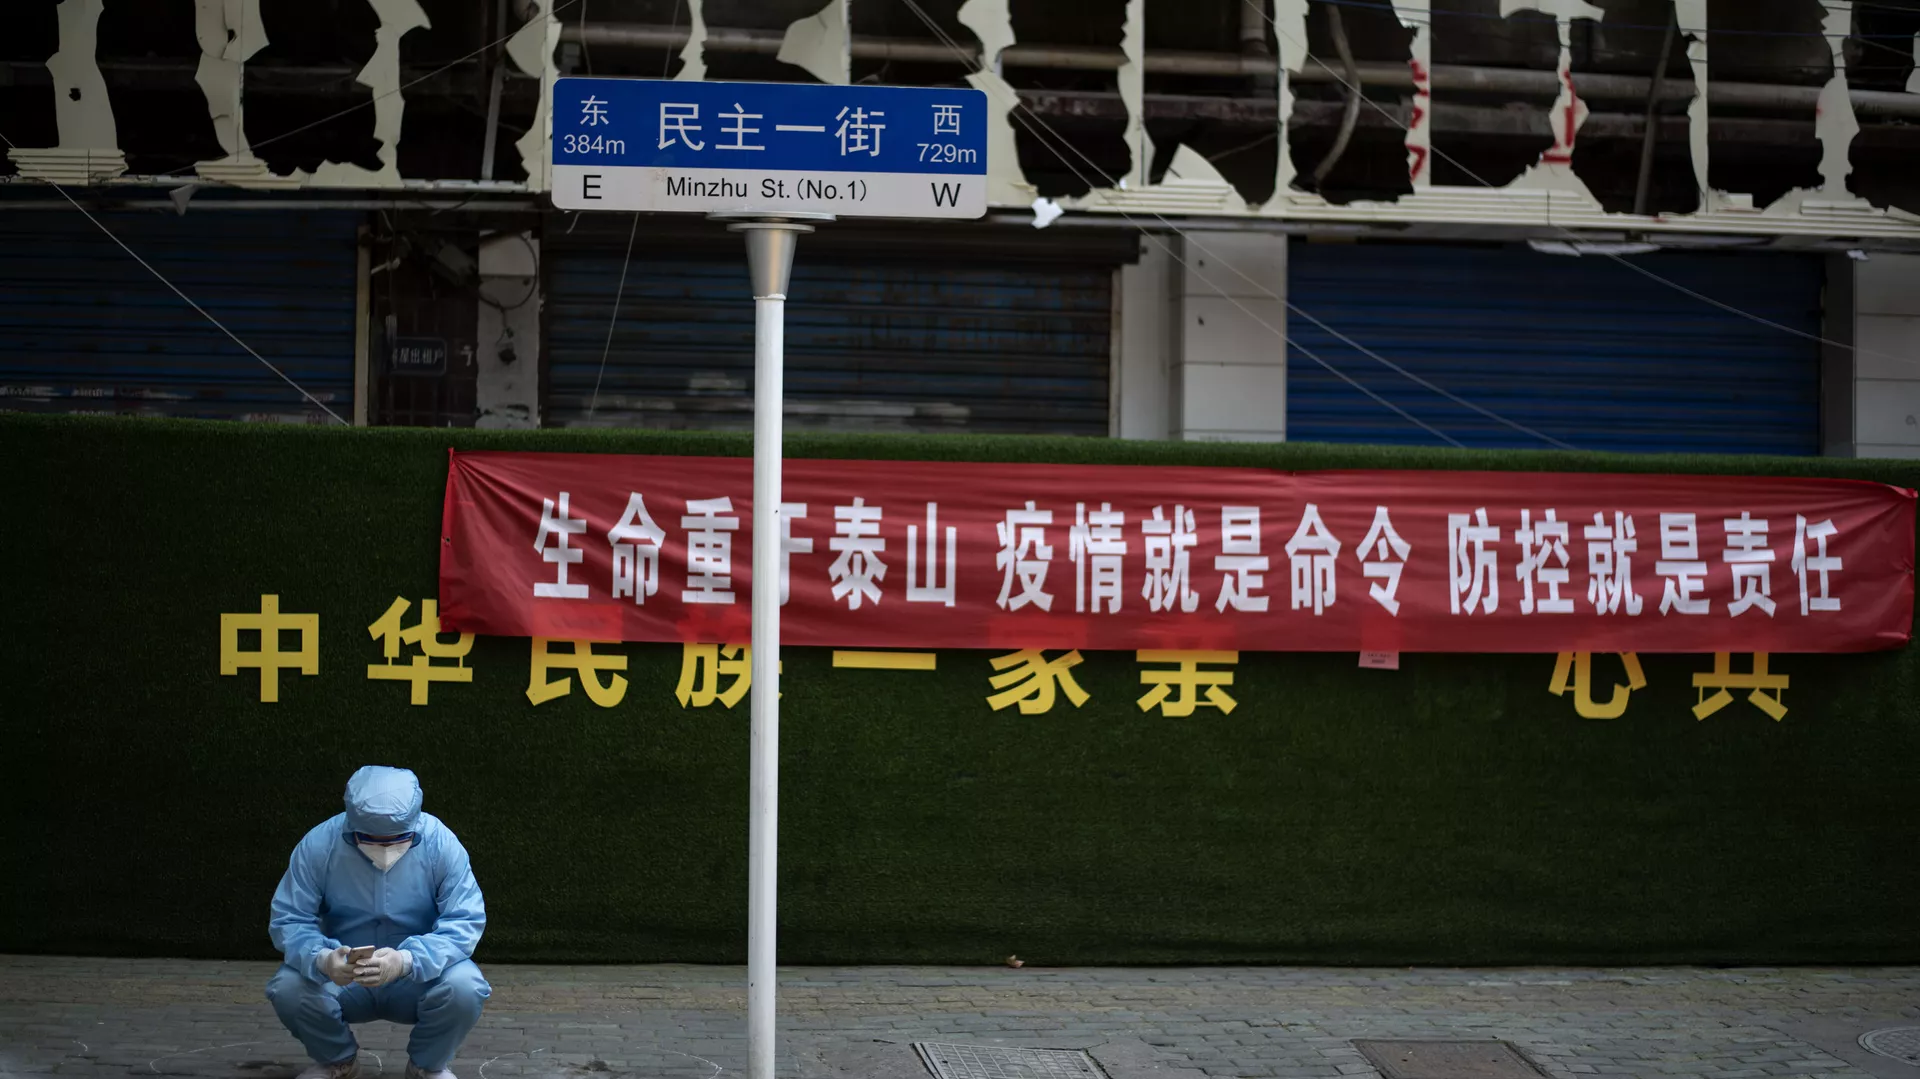 الصين ترفض اتهامات “الصحة العالمية” بإخفاء بيانات من ووهان عن أصول “كورونا”